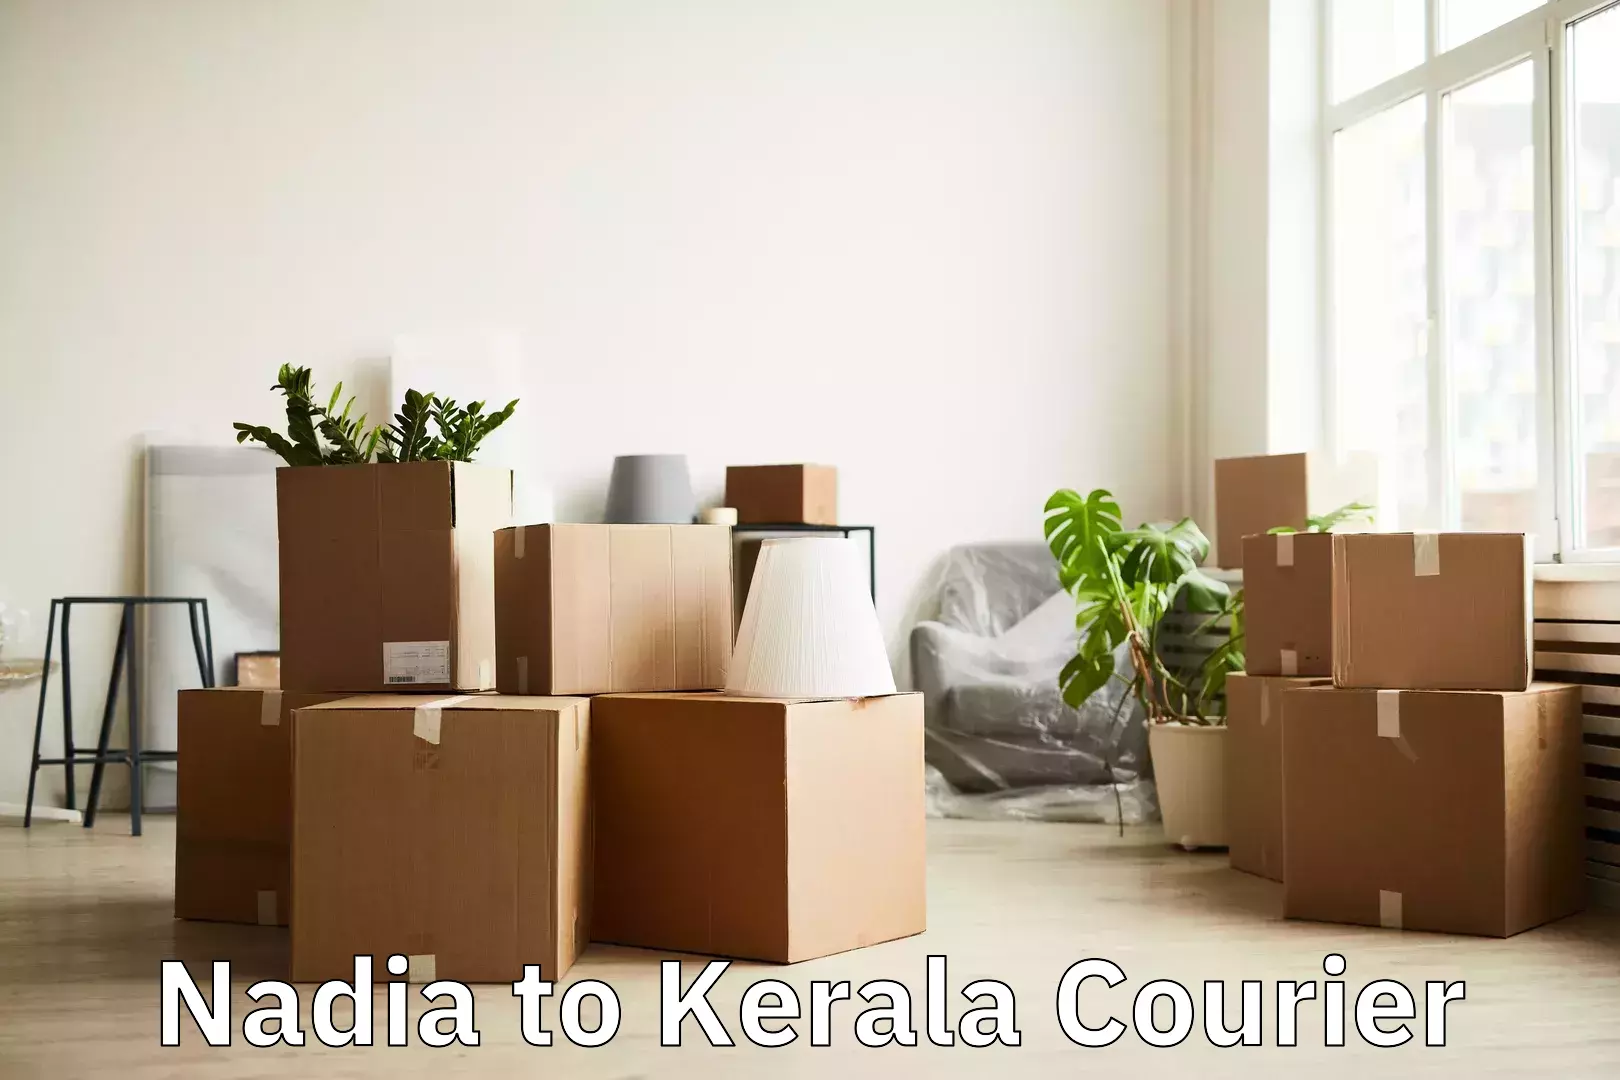 Baggage handling services Nadia to Kerala